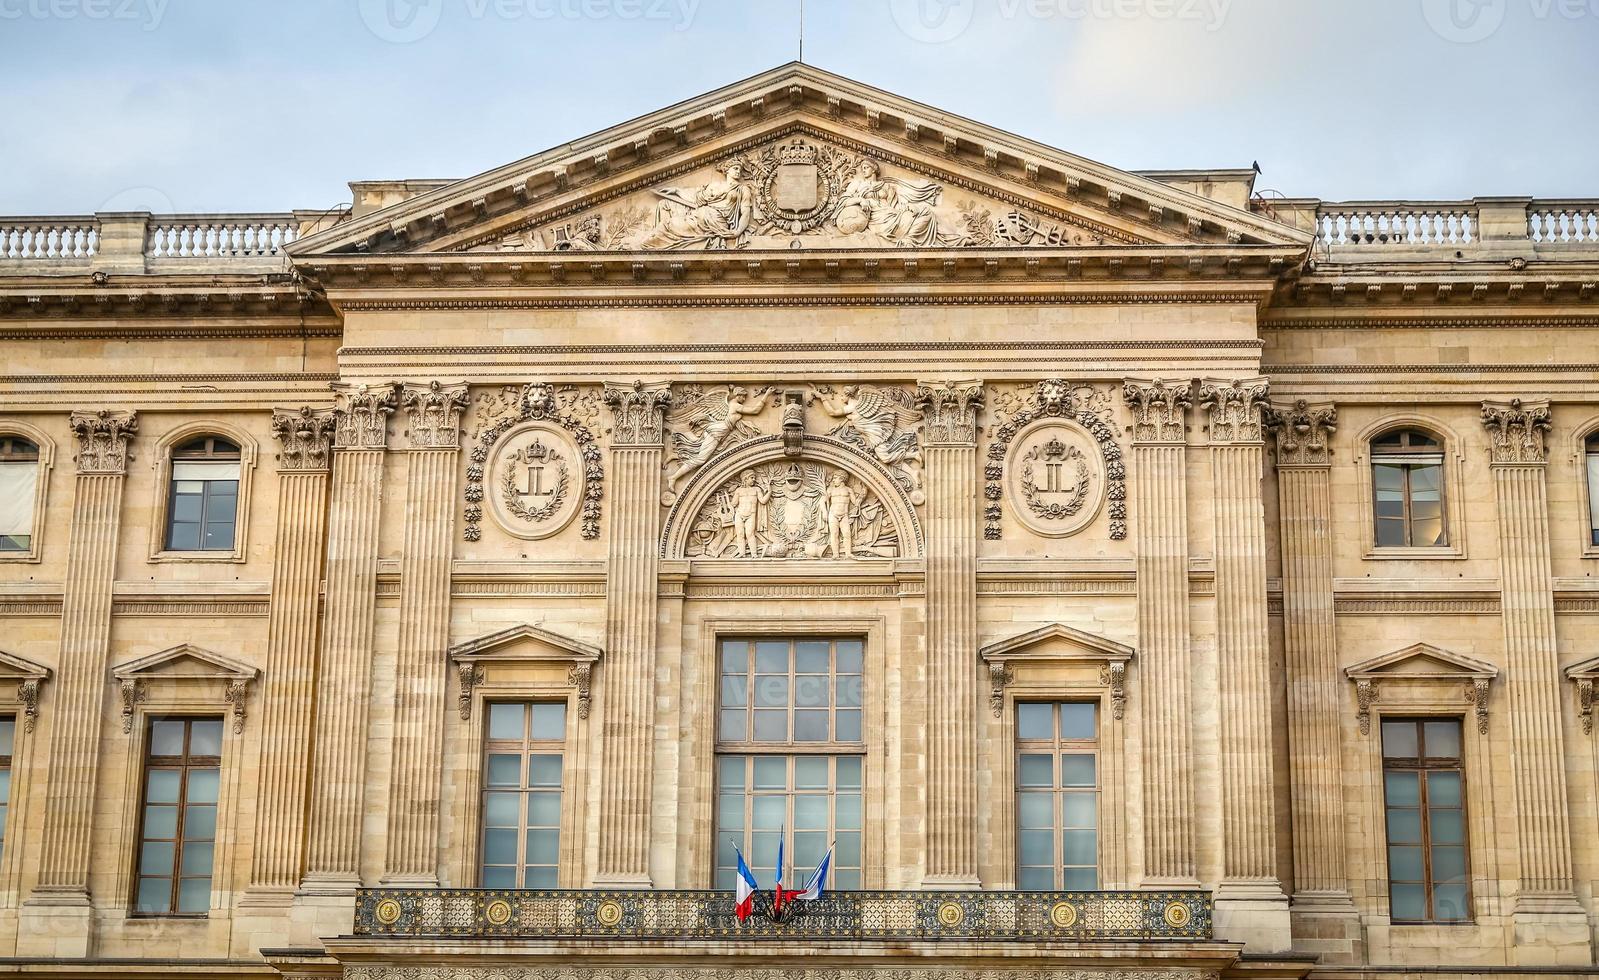 louvre museum i Paris stad foto